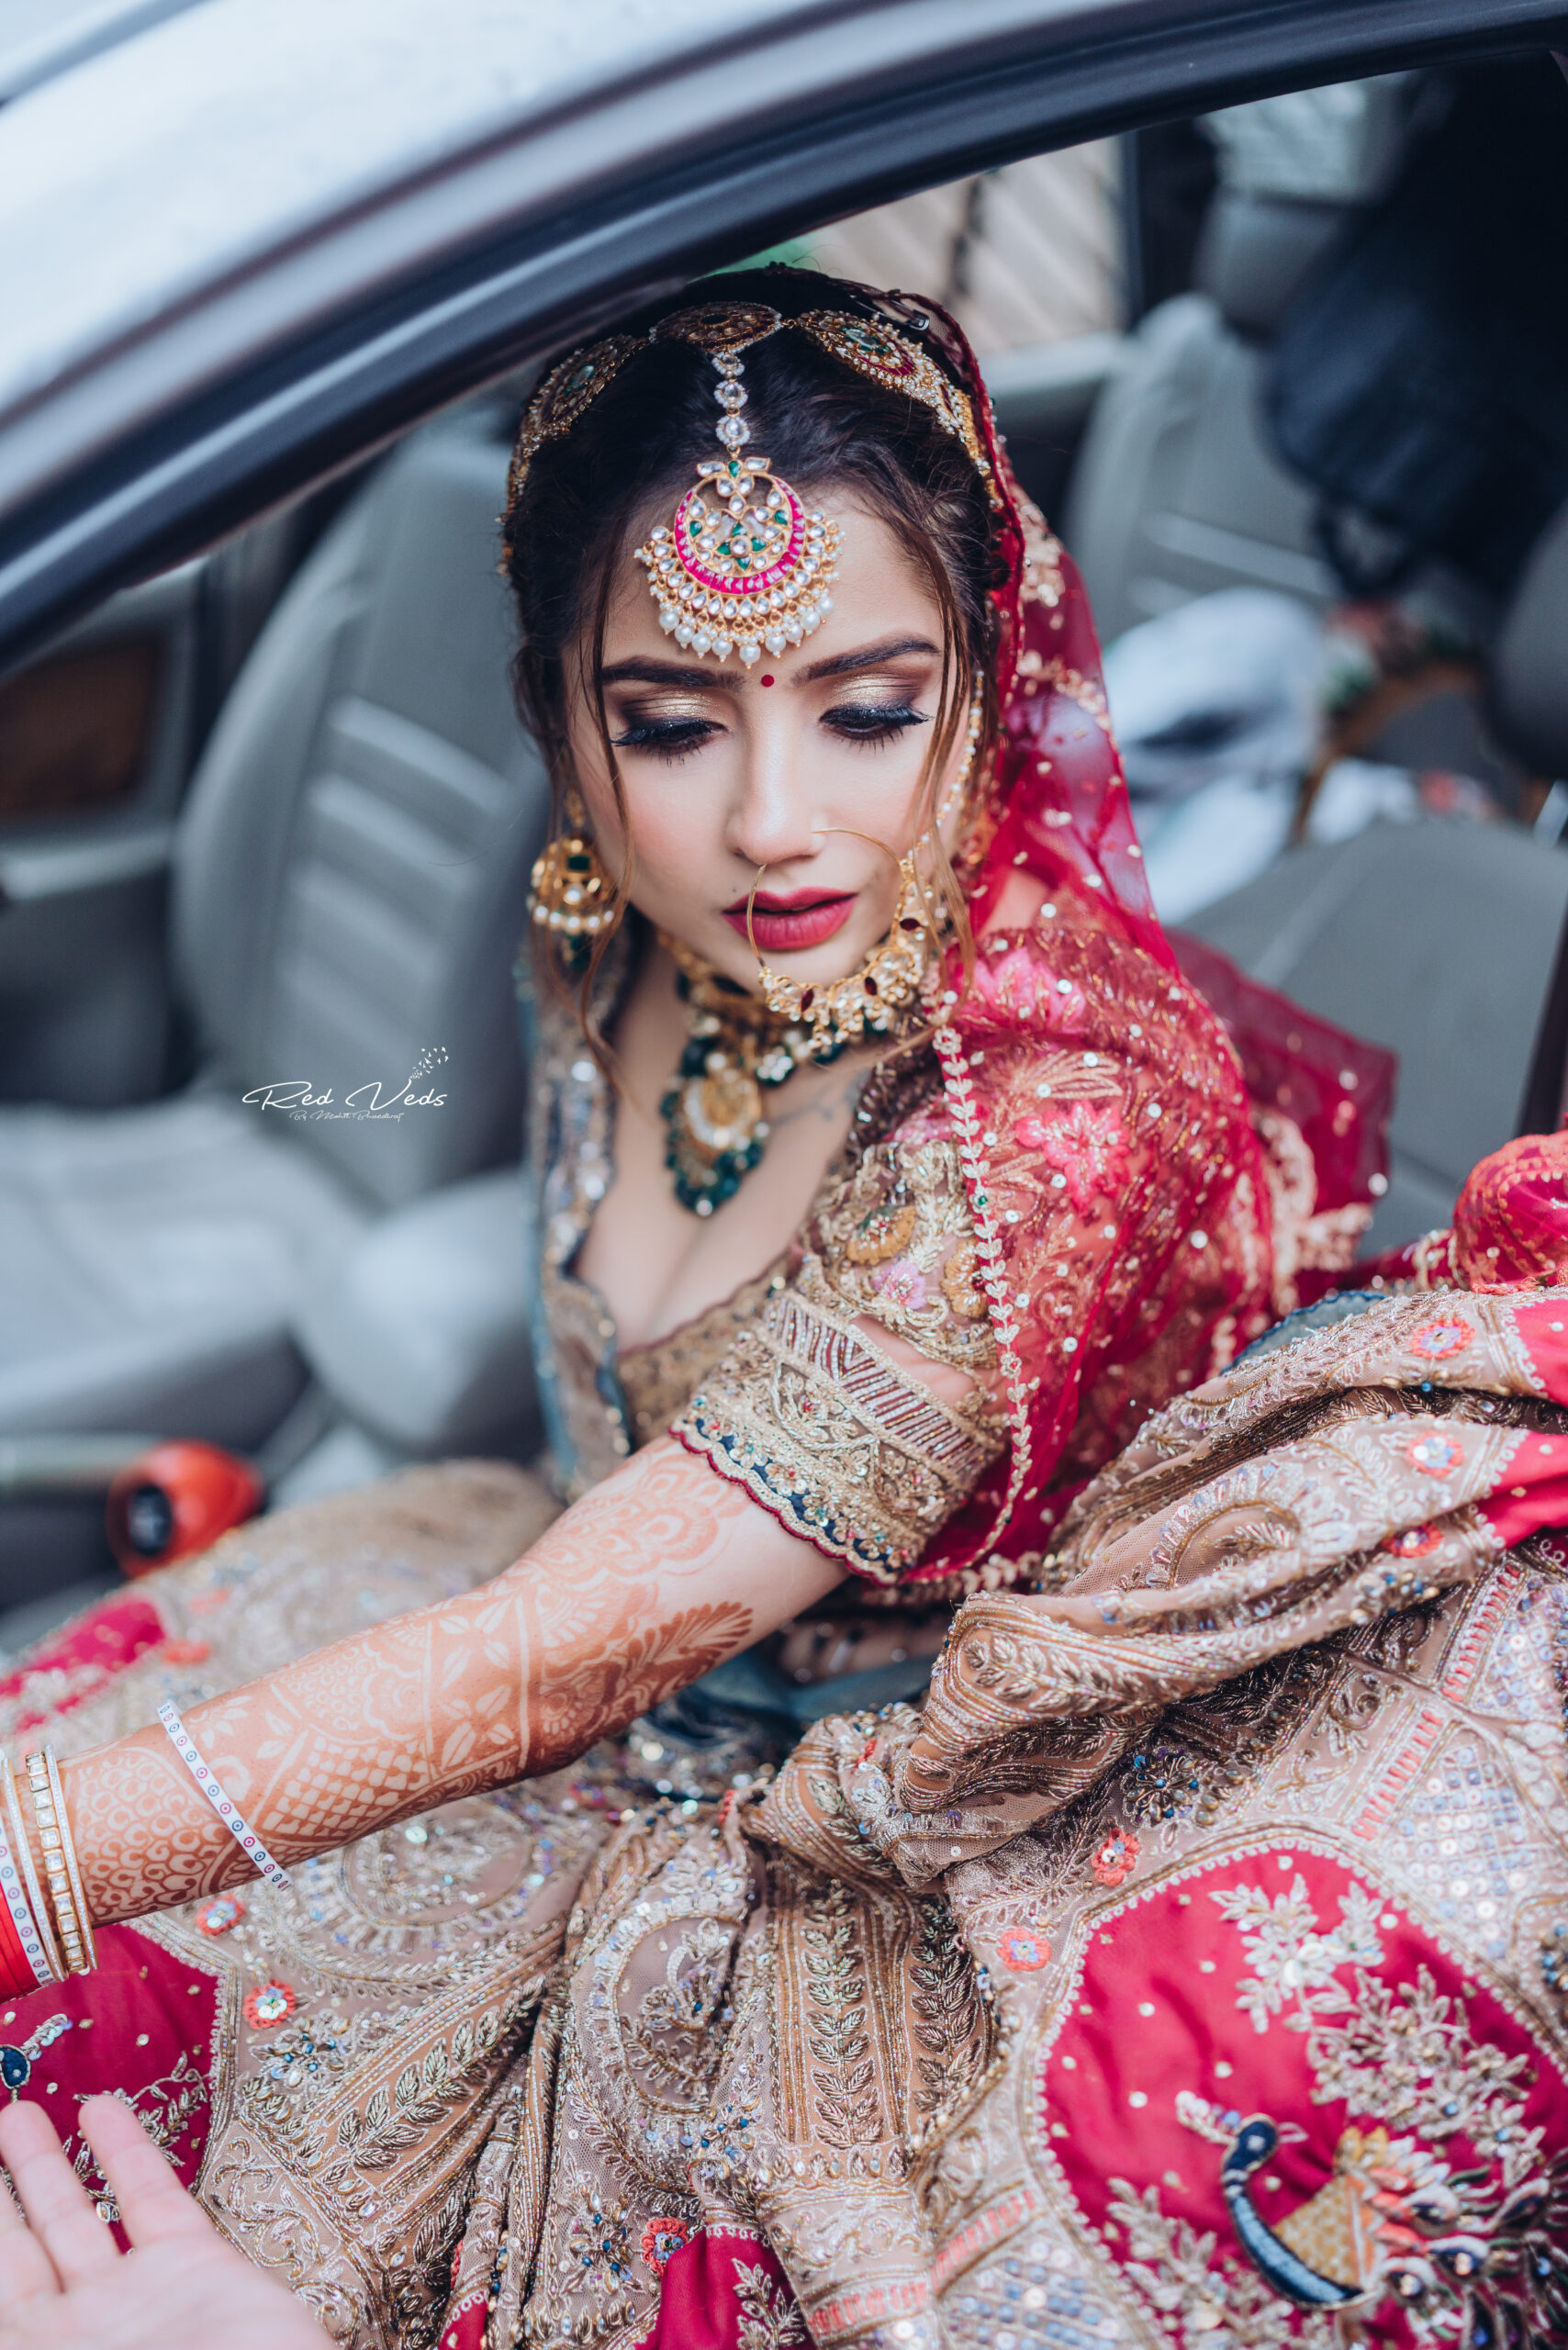 Professional photography ideas,bridal photoshoot poses Indian,dulhan mehndi  photo pose, mehandi - YouTube